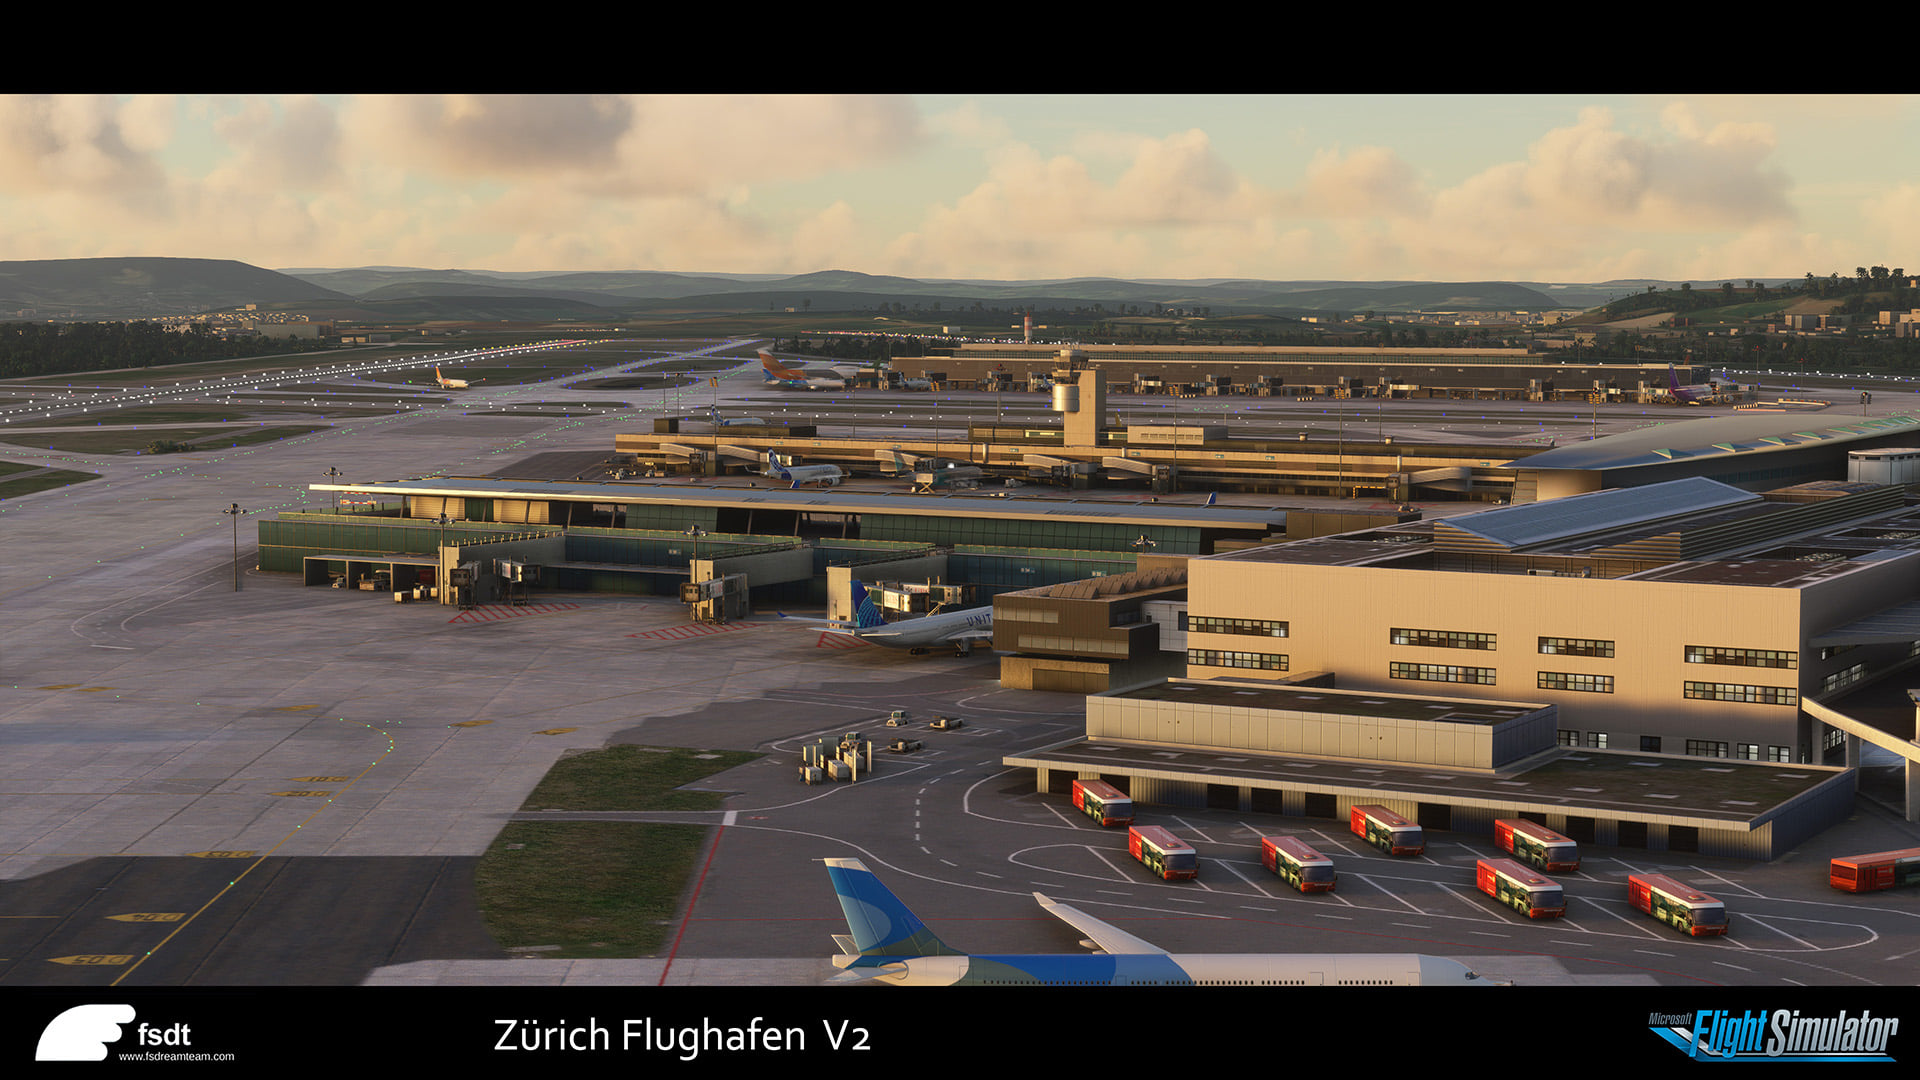 Zurich airport msfs 3